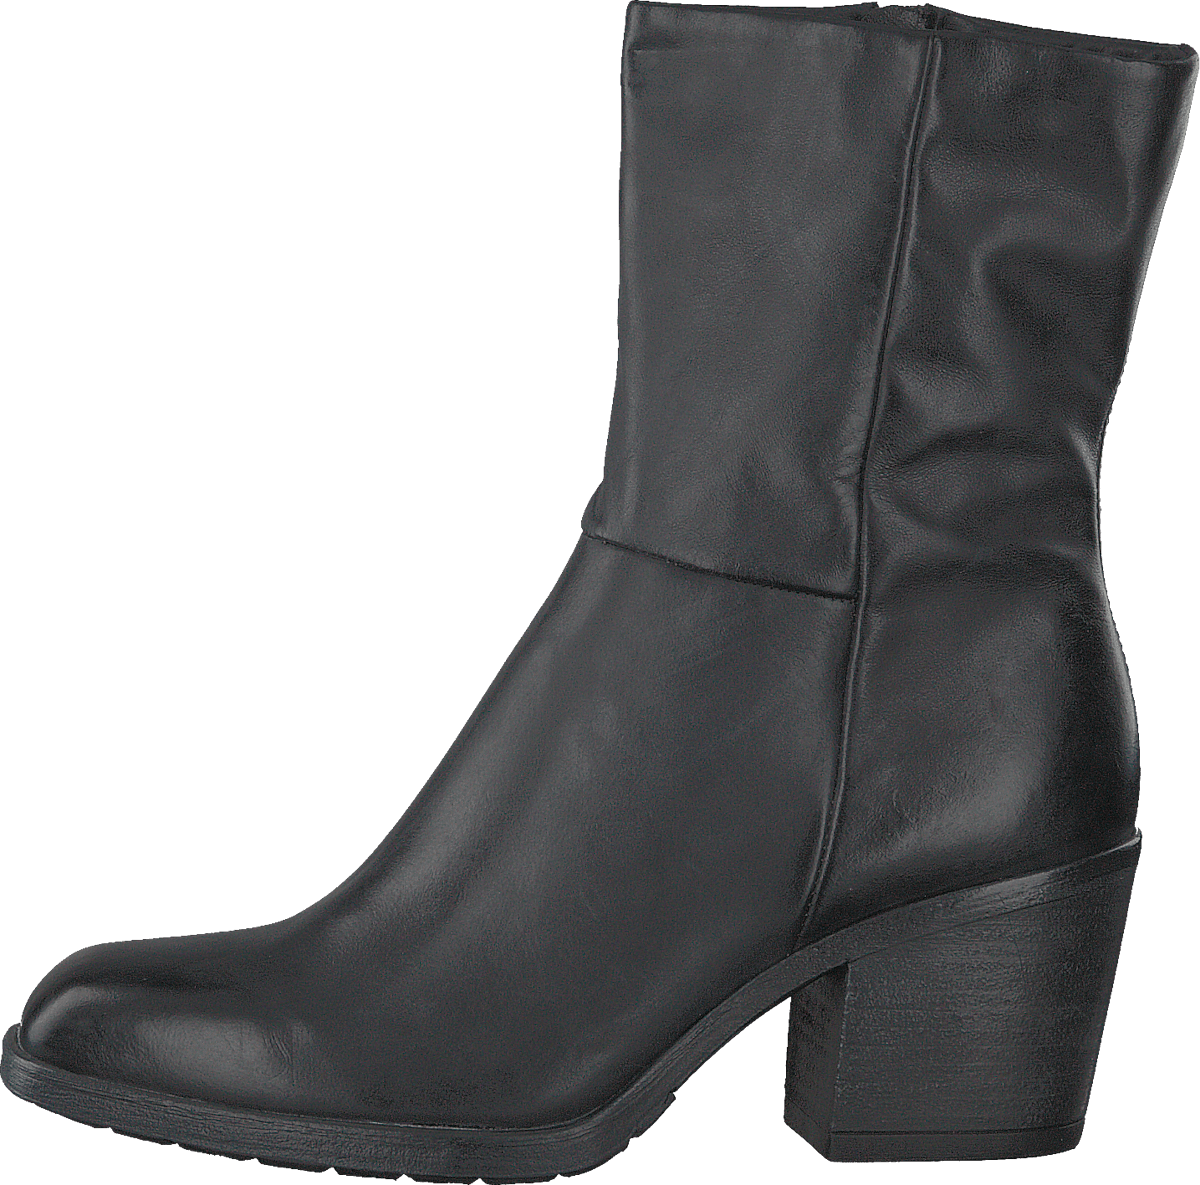 Boots Zip Kir Nero/6051